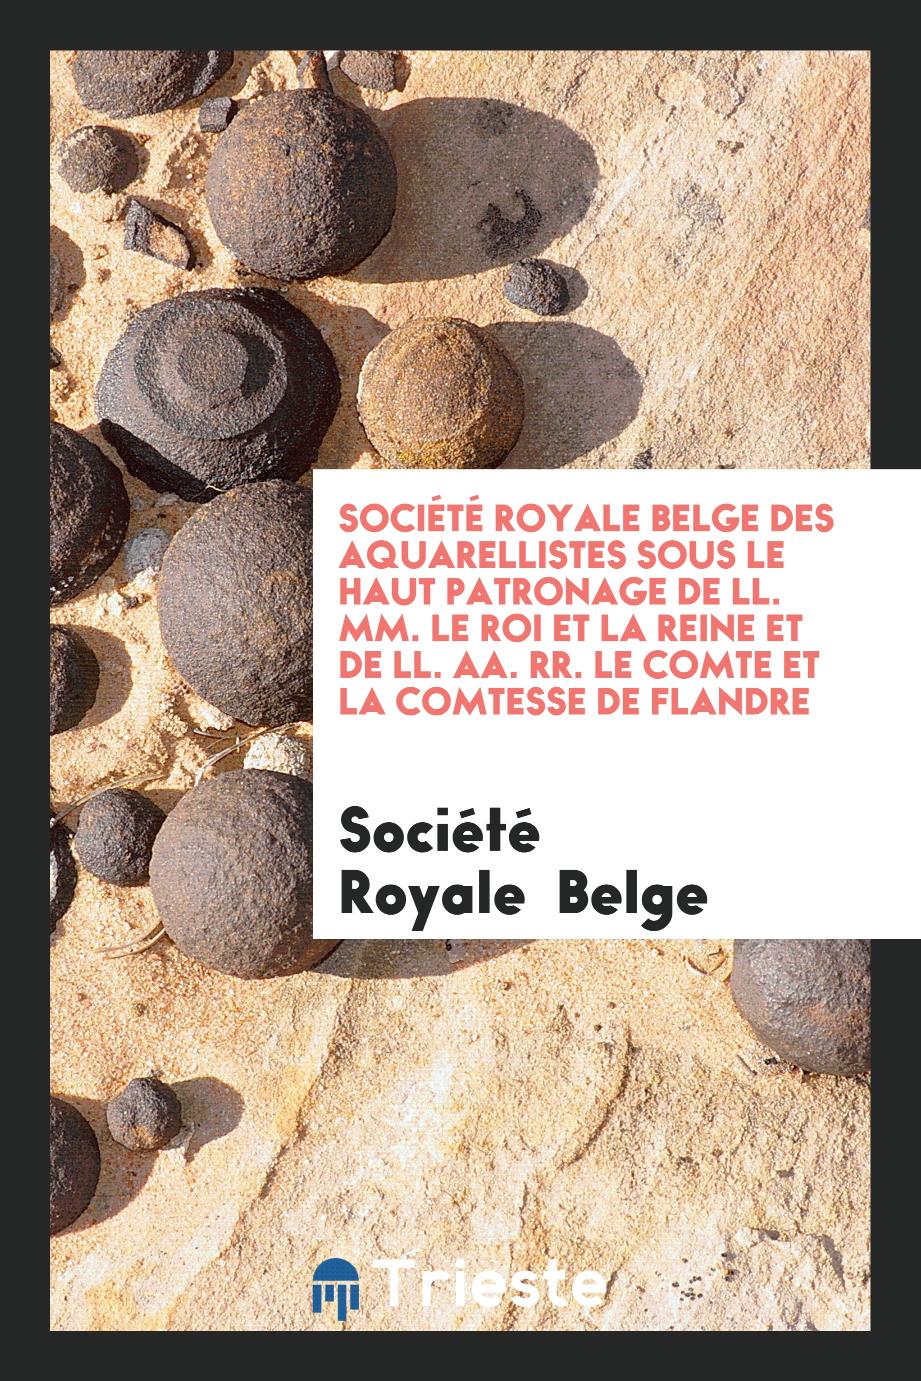 Société Royale Belge des Aquarellistes Sous le Haut Patronage de LL. MM. le Roi et la Reine Et de LL. AA. RR. le Comte et la Comtesse de Flandre